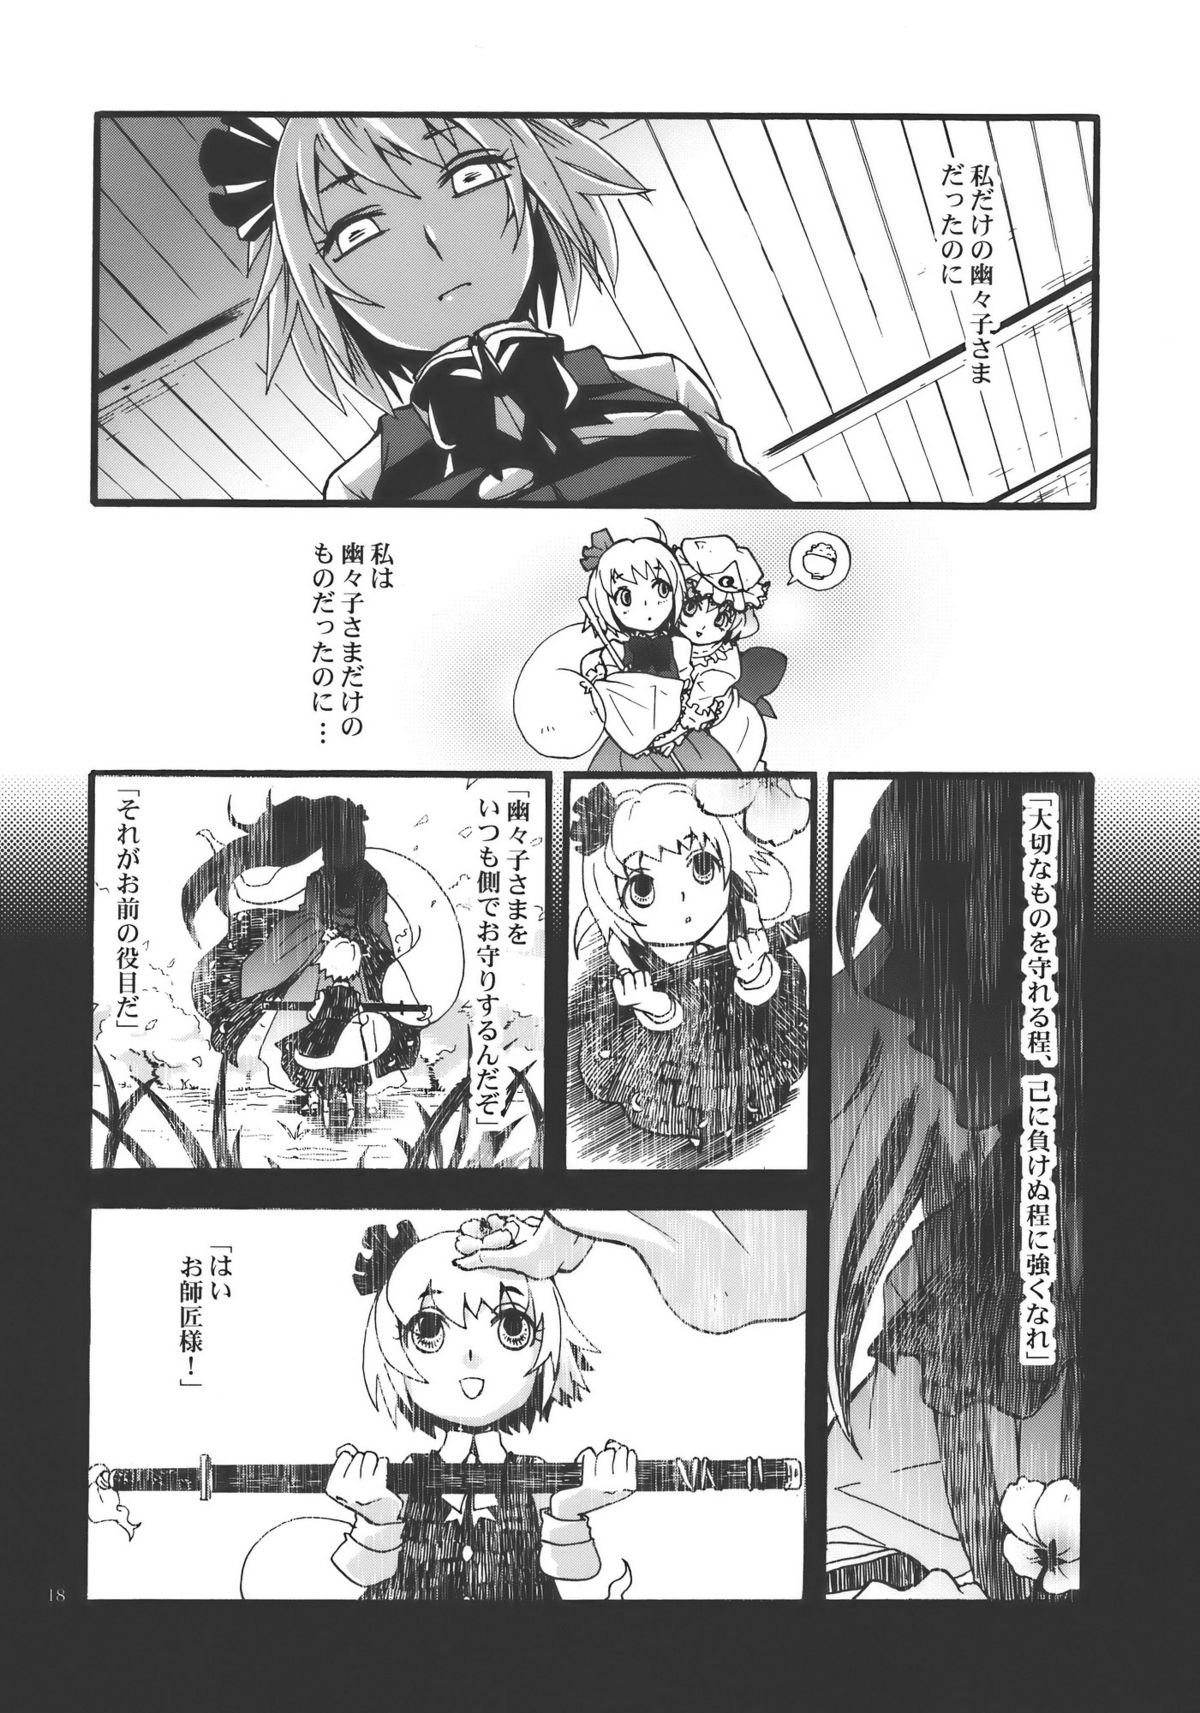 (Yuumei Sakura) [Zipper Wrist (Eguchi)] Hana no Shita Nite (Touhou Project) page 18 full